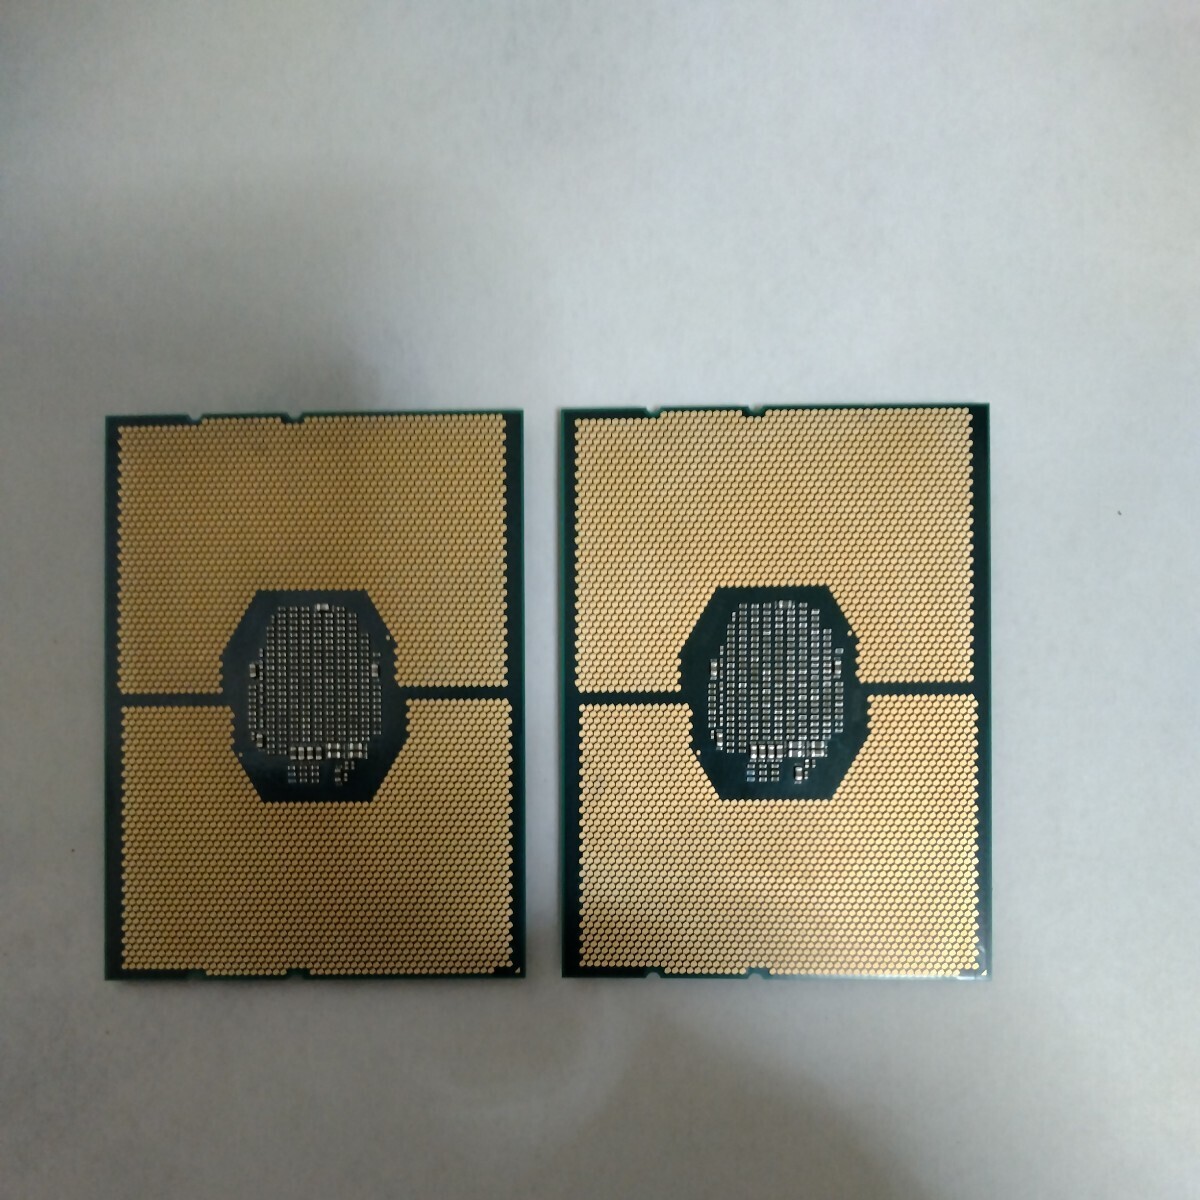 【動作確認済CPU2個セット】Intel Xeon Silver 4116, 12C / 24T, 2.1GHz base / 3.0GHz turbo, TDP 85 W, LGA3647ソケット_画像5